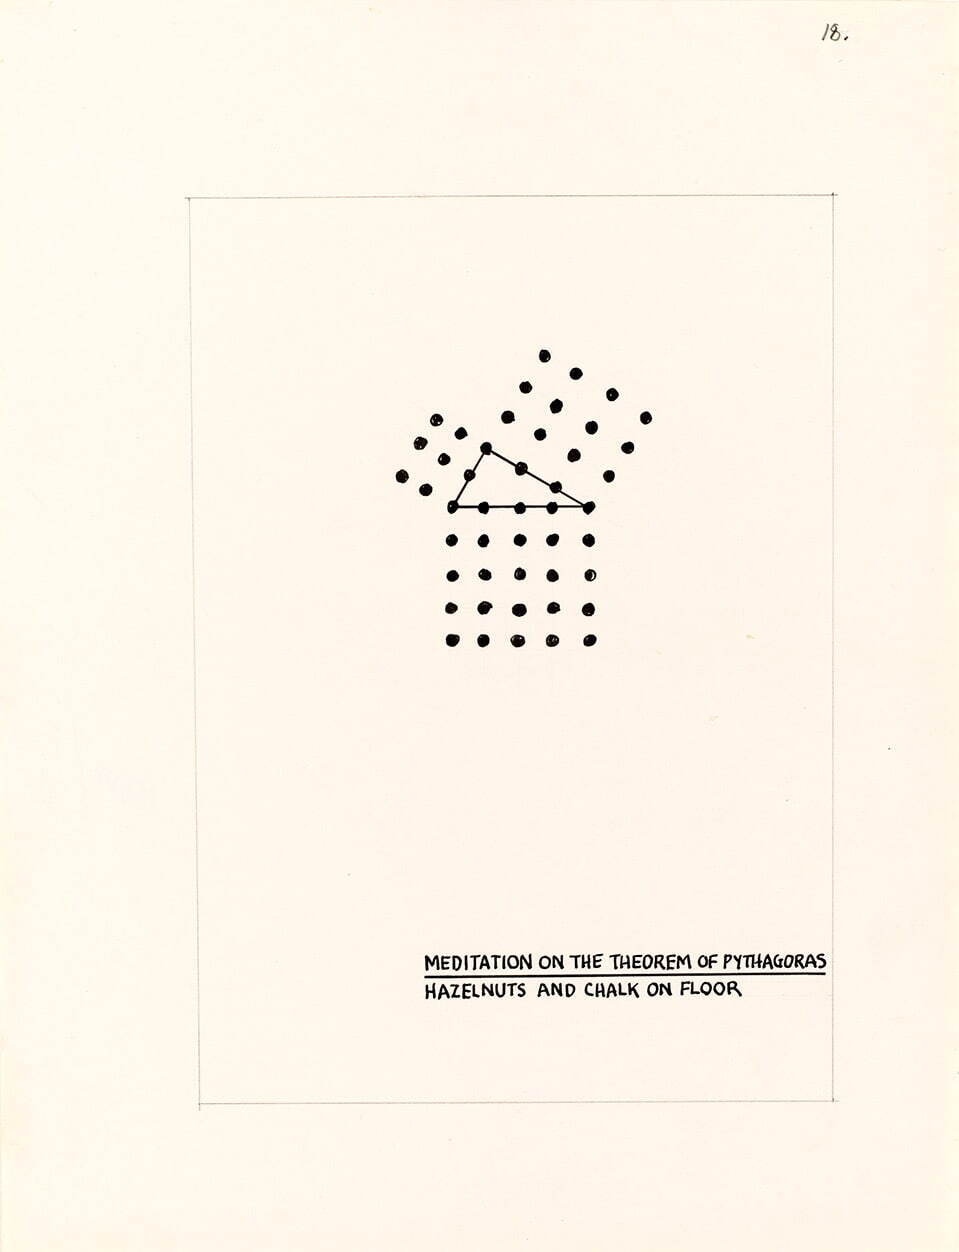 メル・ボックナー 《プライマー(ピタゴラスの定理についての黙想)》 1973年 国立国際美術館蔵
© Mel Bochner